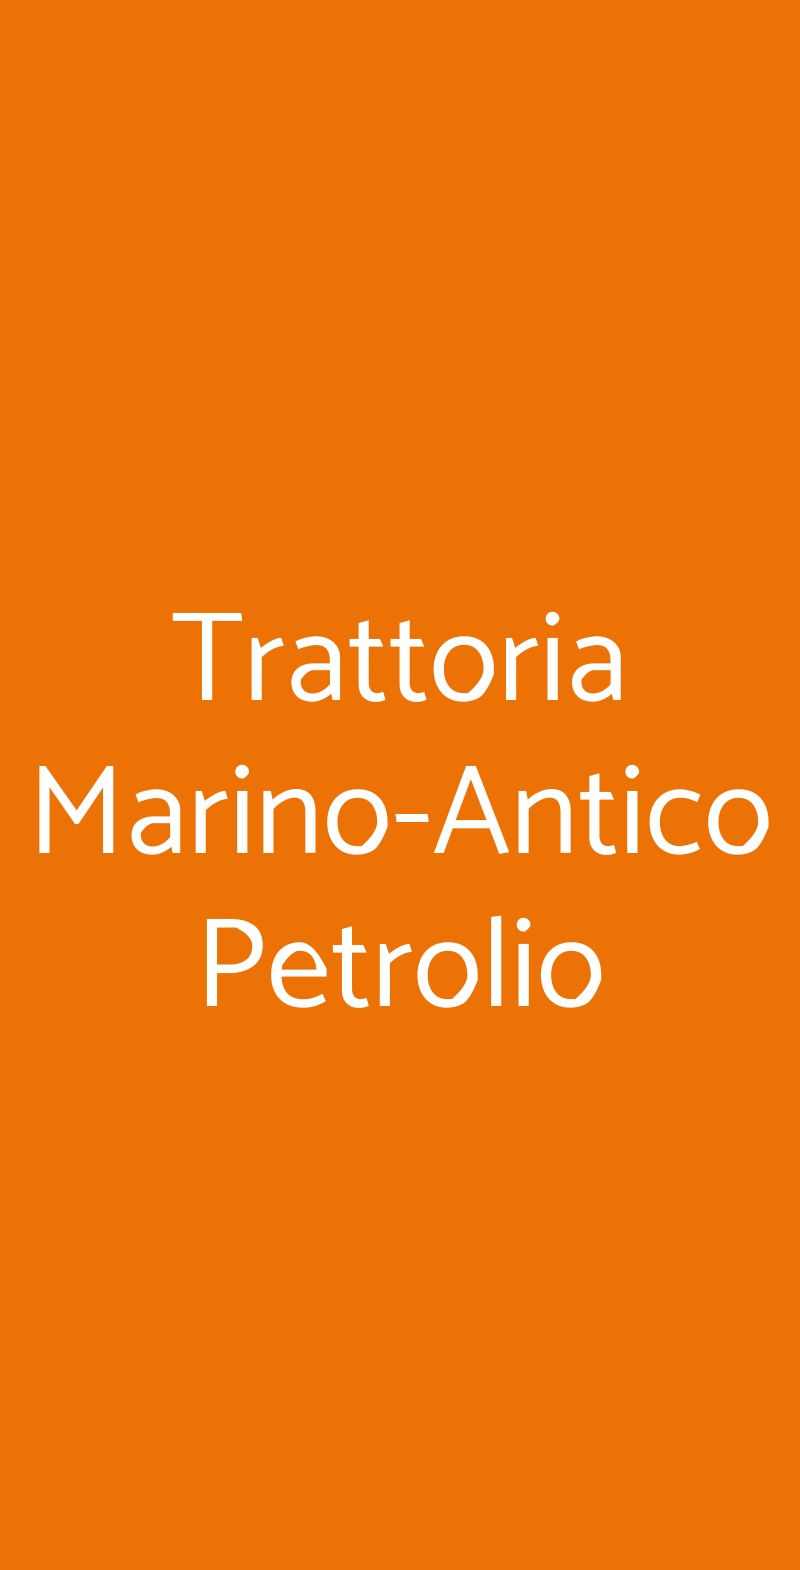 Trattoria Marino-Antico Petrolio Firenze menù 1 pagina